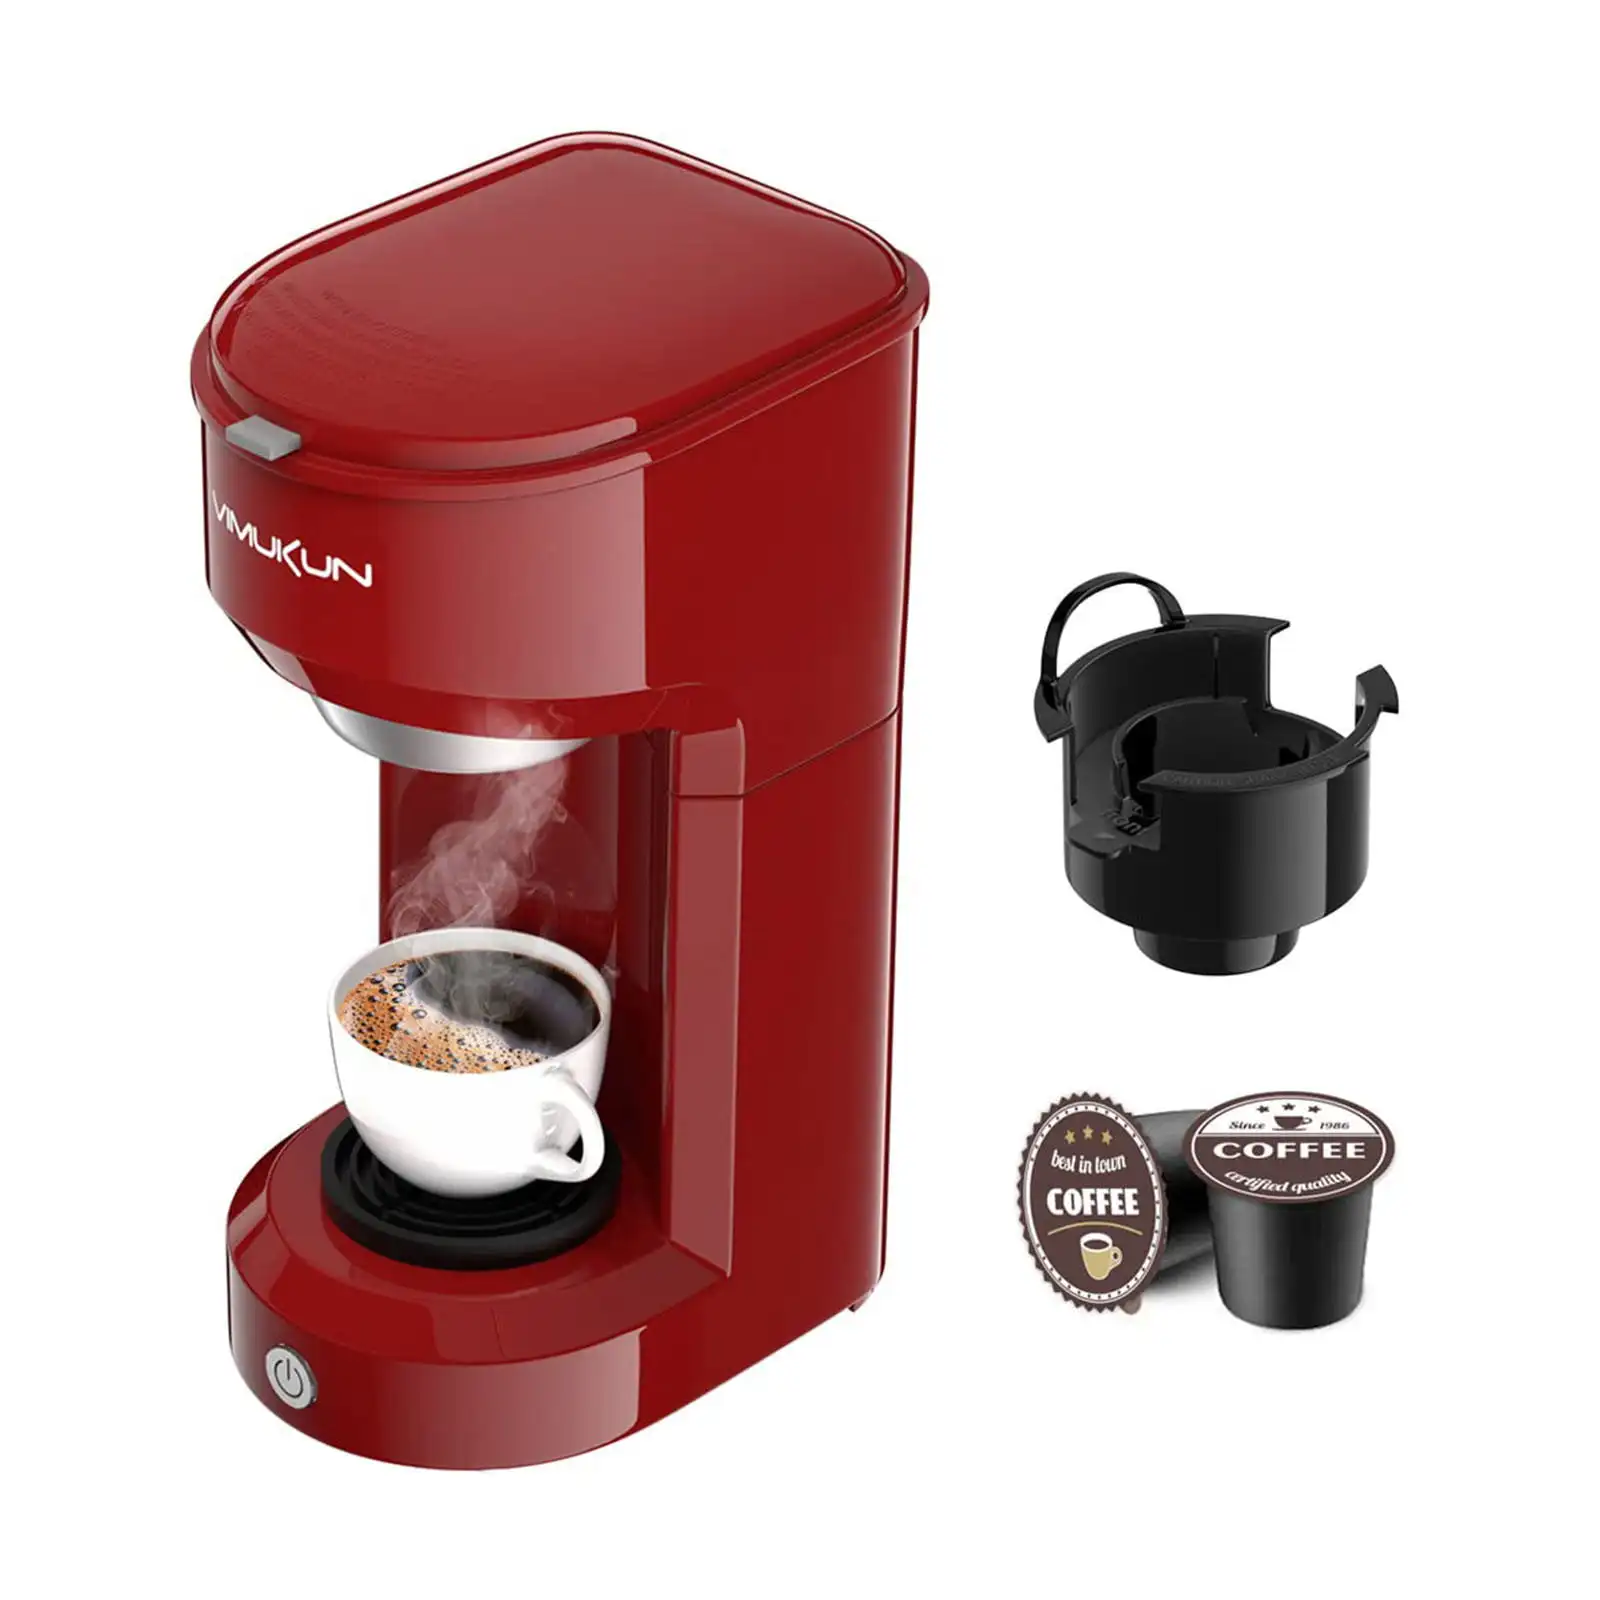 

Кофеварка для одного сервиса, Кофеварка от 6 до 14 унций, совместима с K-Cup, капсулы с одной чашкой и резервуаром, маленький размер, красная